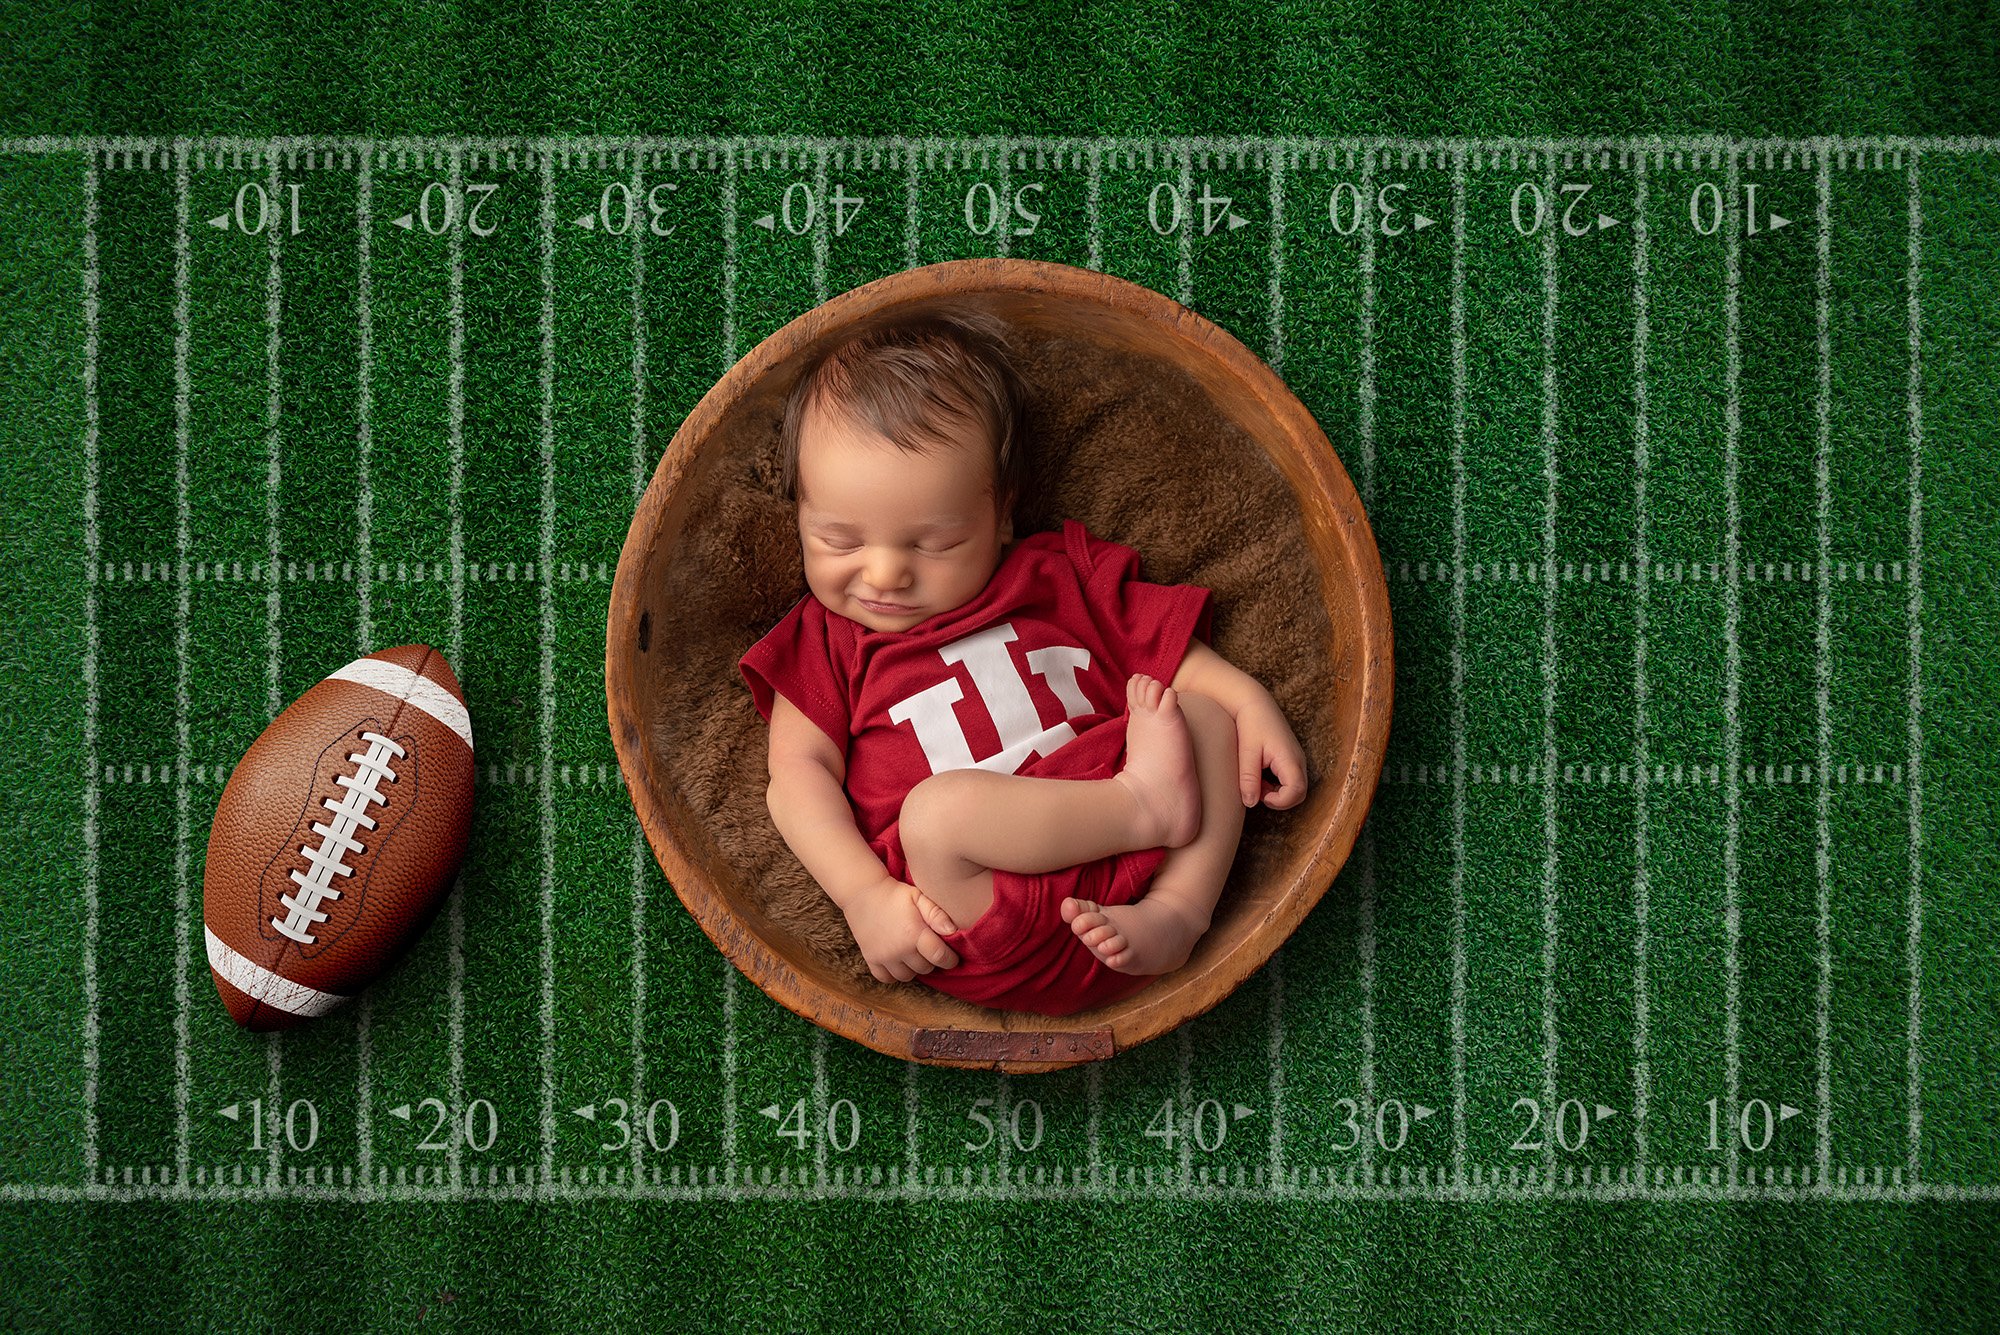 grinning newborn boy wearing a football jersey lying on a football field with a football